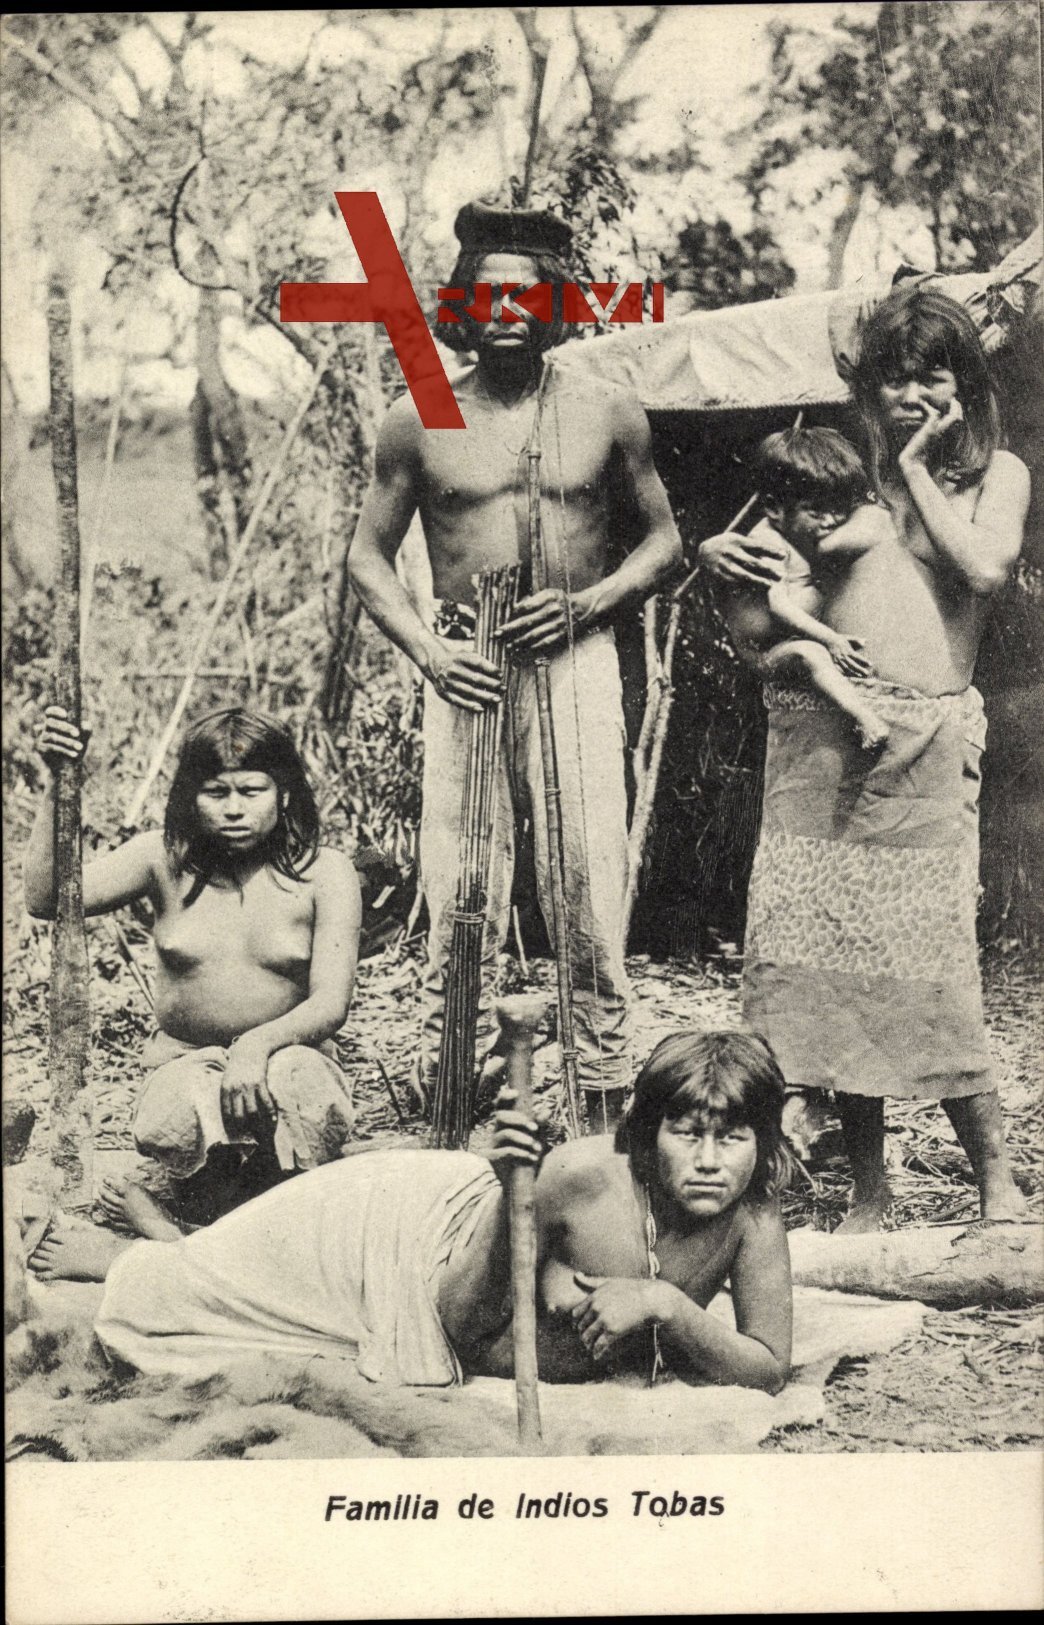 Familia de Indios Tobas, Südamerika, Guaycurú Indianer